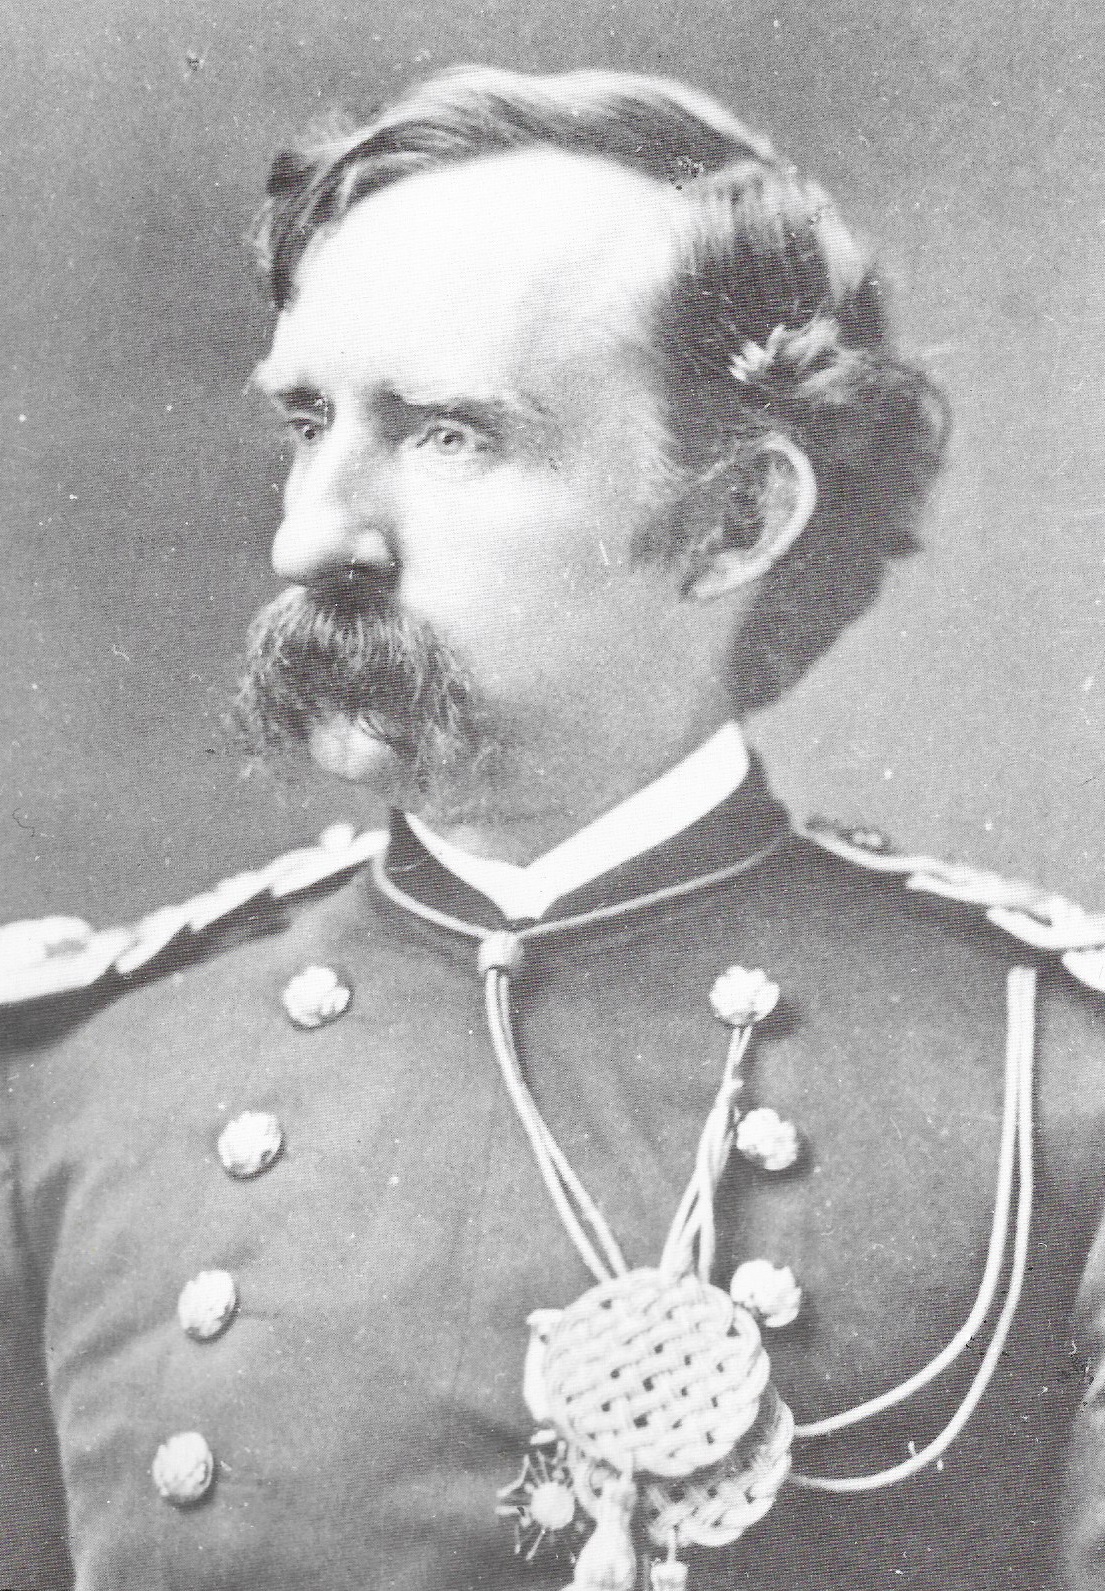 Lt. Col. Custer, NY early 1876 ~